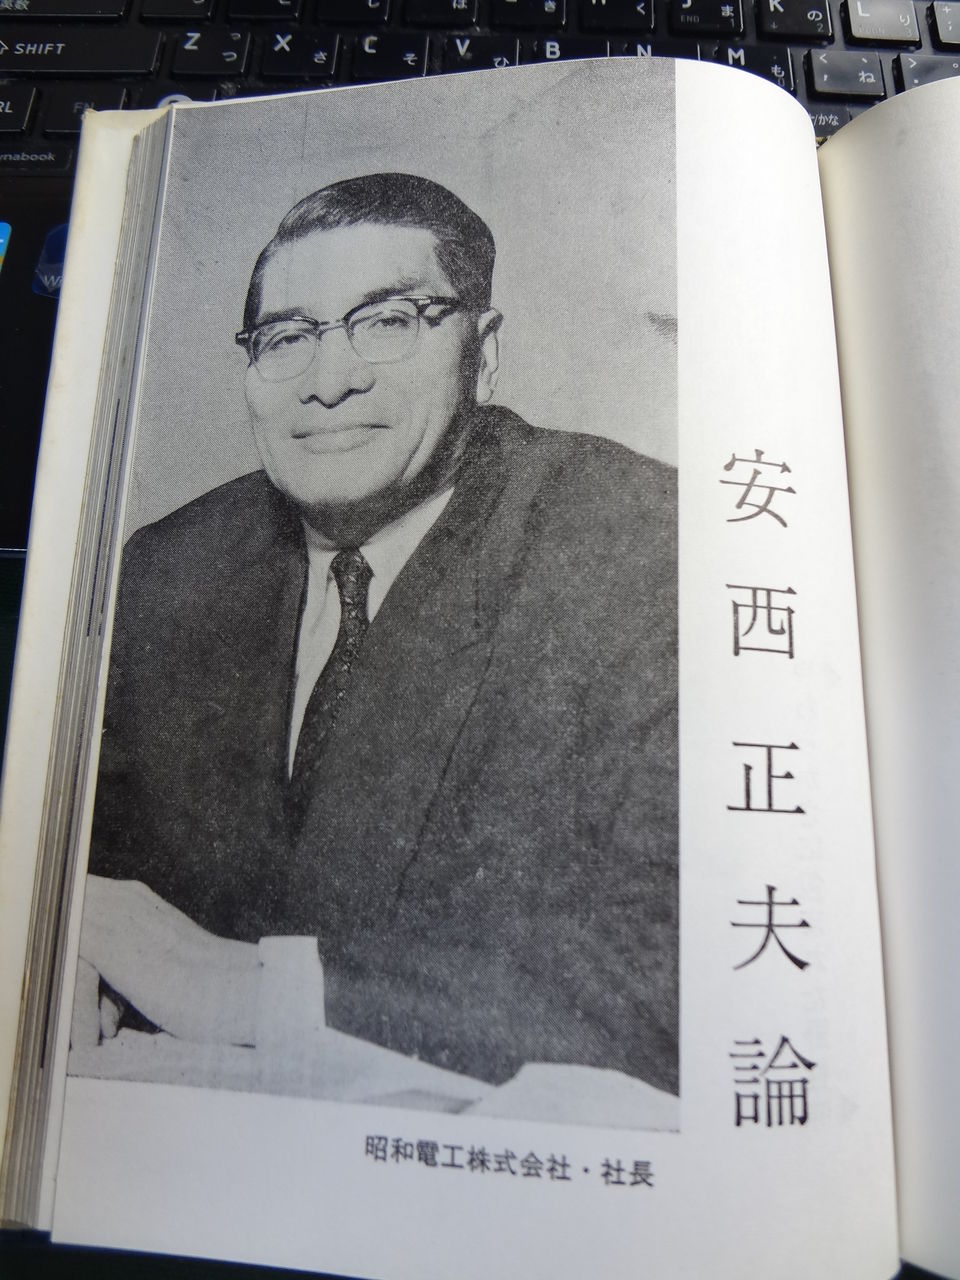 続 現代日本の経営者 その戦略と戦術 武山泰雄 著 １９６１年年５月出版 伊佐 ランチェスター経営 一言 多い ブログ